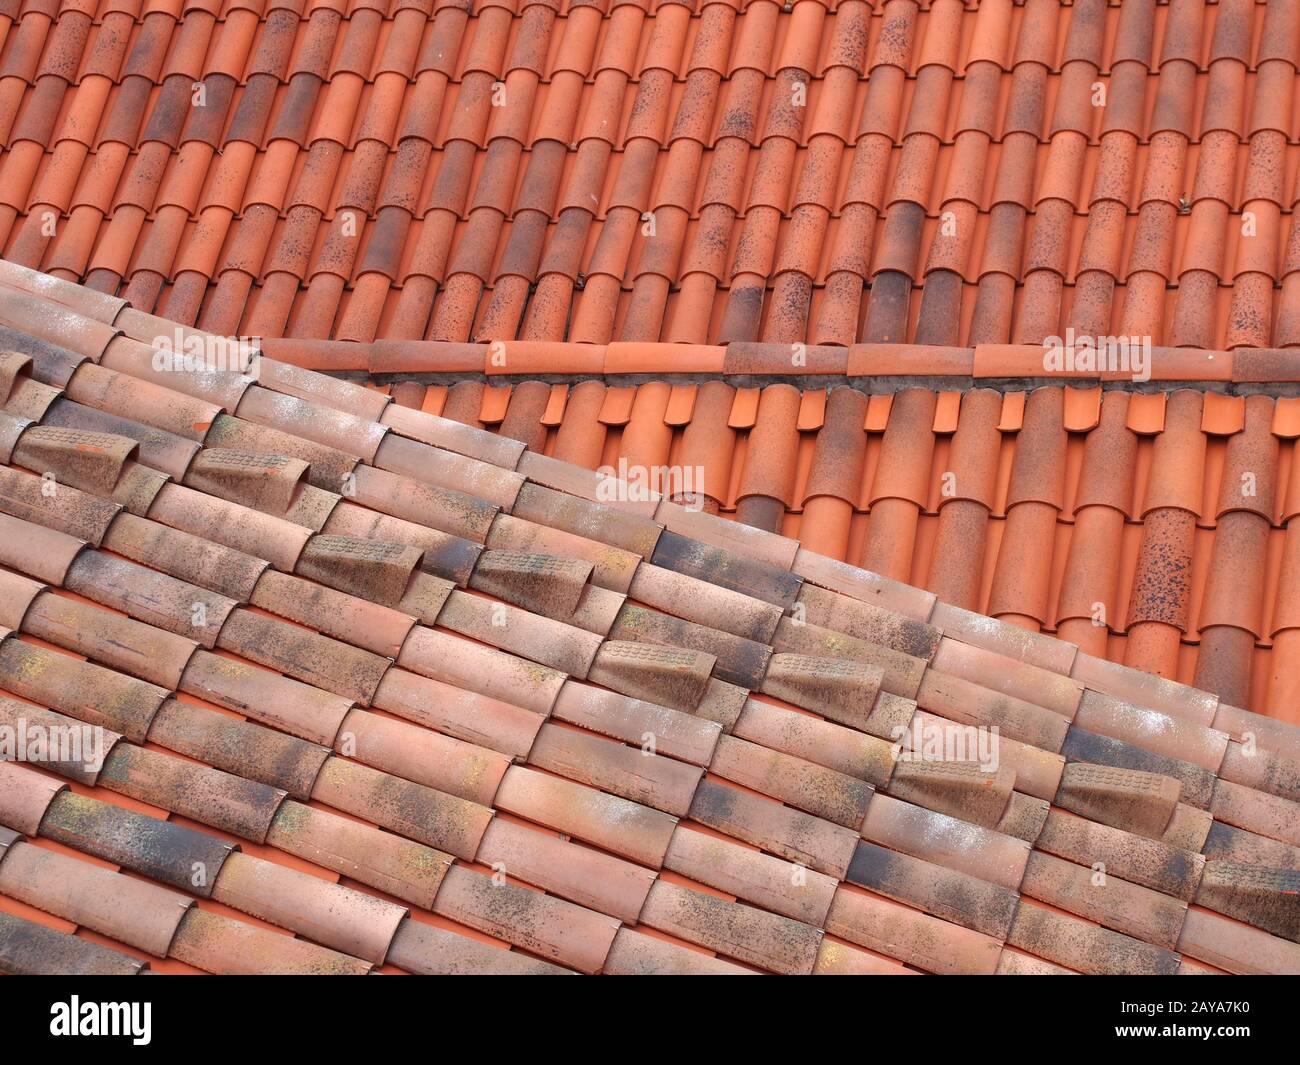 vista a cornice di vecchi e nuovi tetti tradizionali in terracotta rossa con tegole curve sovrapposte a linee sovrapposte Foto Stock